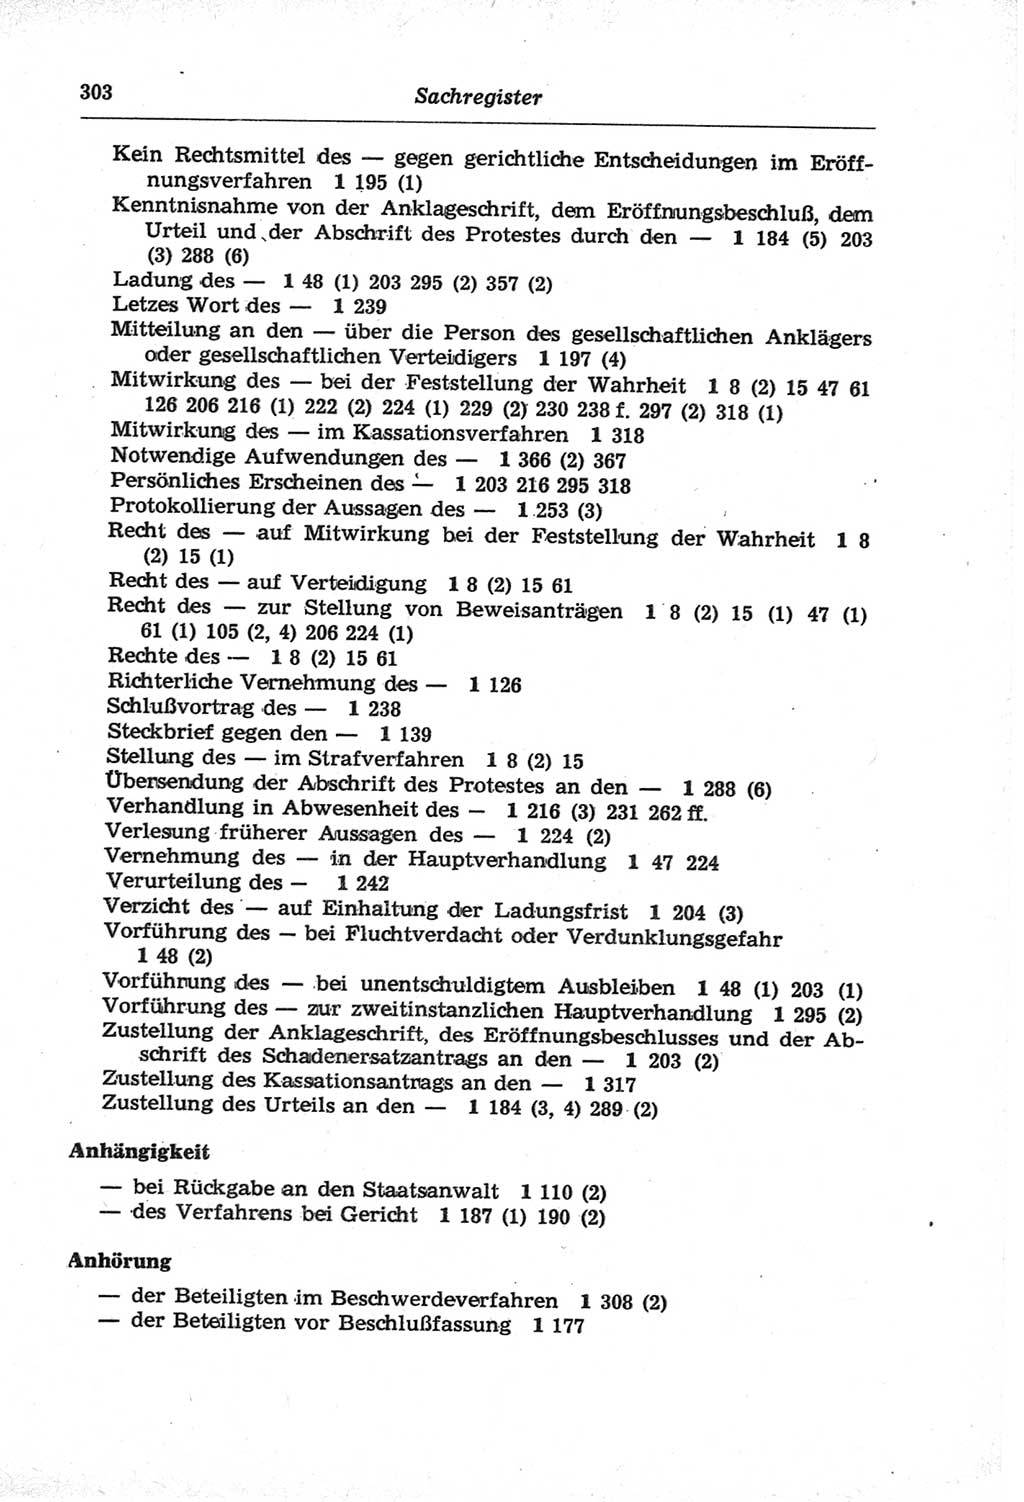 Strafprozeßordnung (StPO) der Deutschen Demokratischen Republik (DDR) und angrenzende Gesetze und Bestimmungen 1968, Seite 303 (StPO Ges. Bstgn. DDR 1968, S. 303)